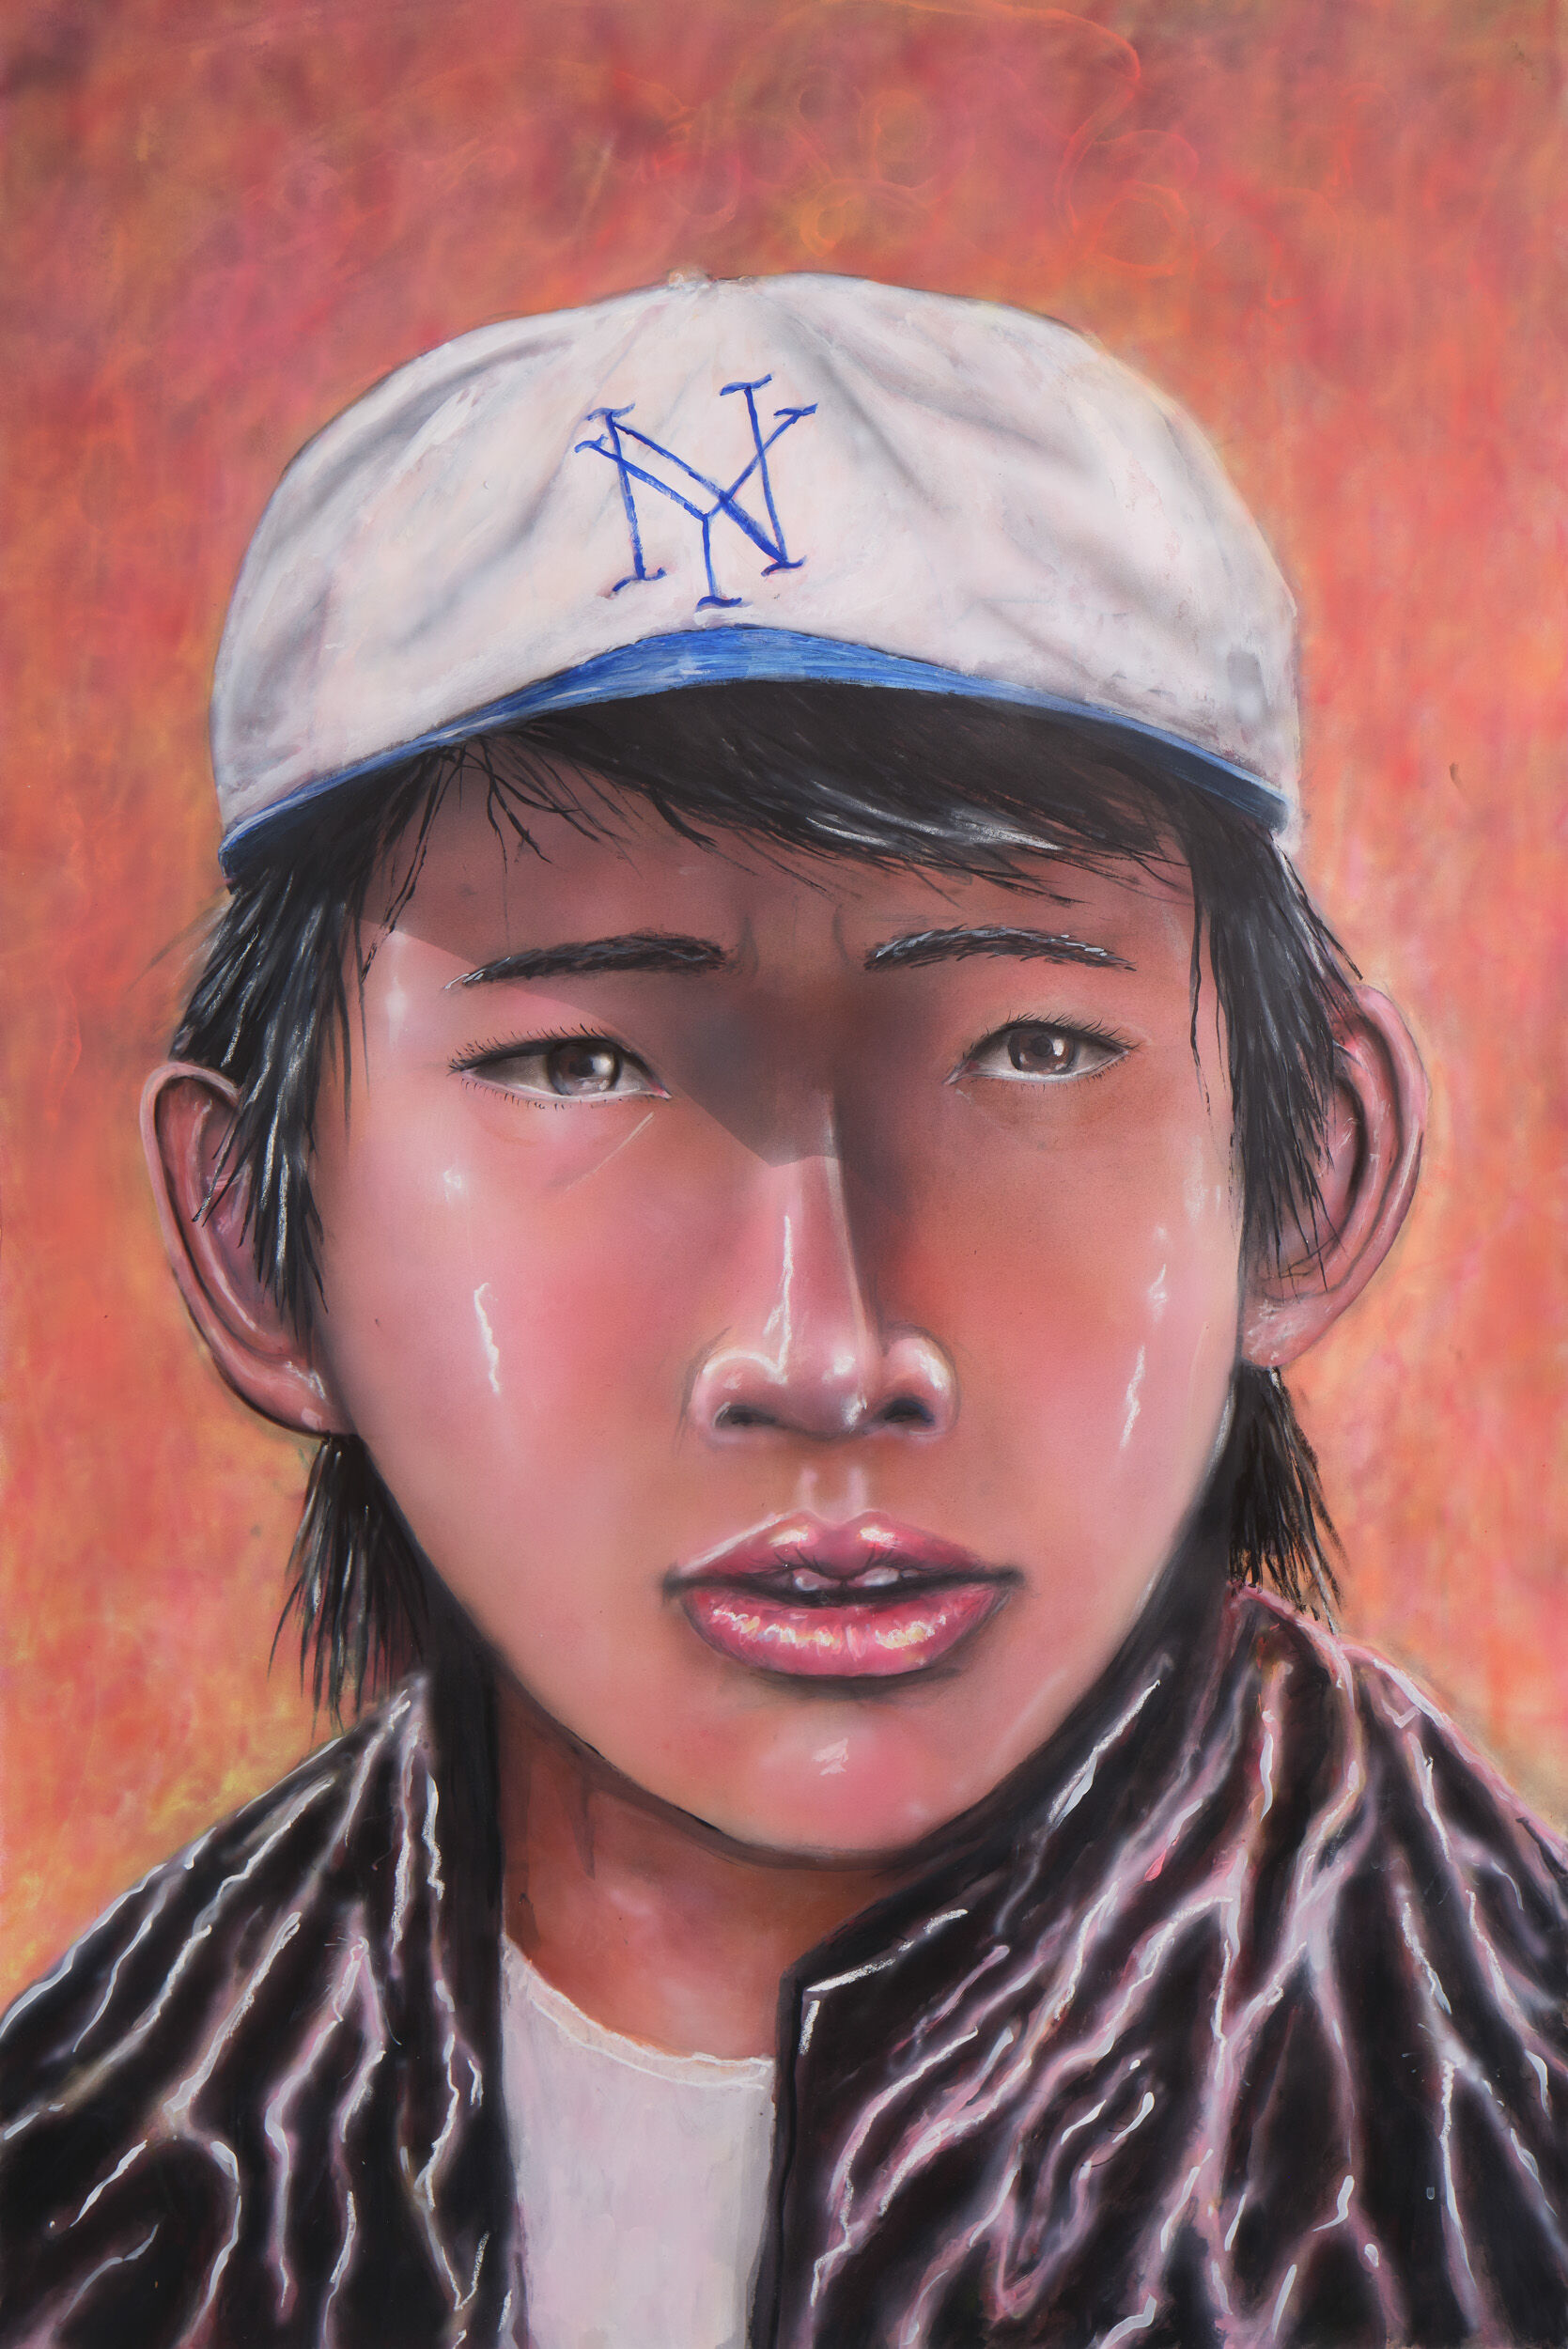 Daniel Wang's portrait of a teenaged Ke Huy Quan